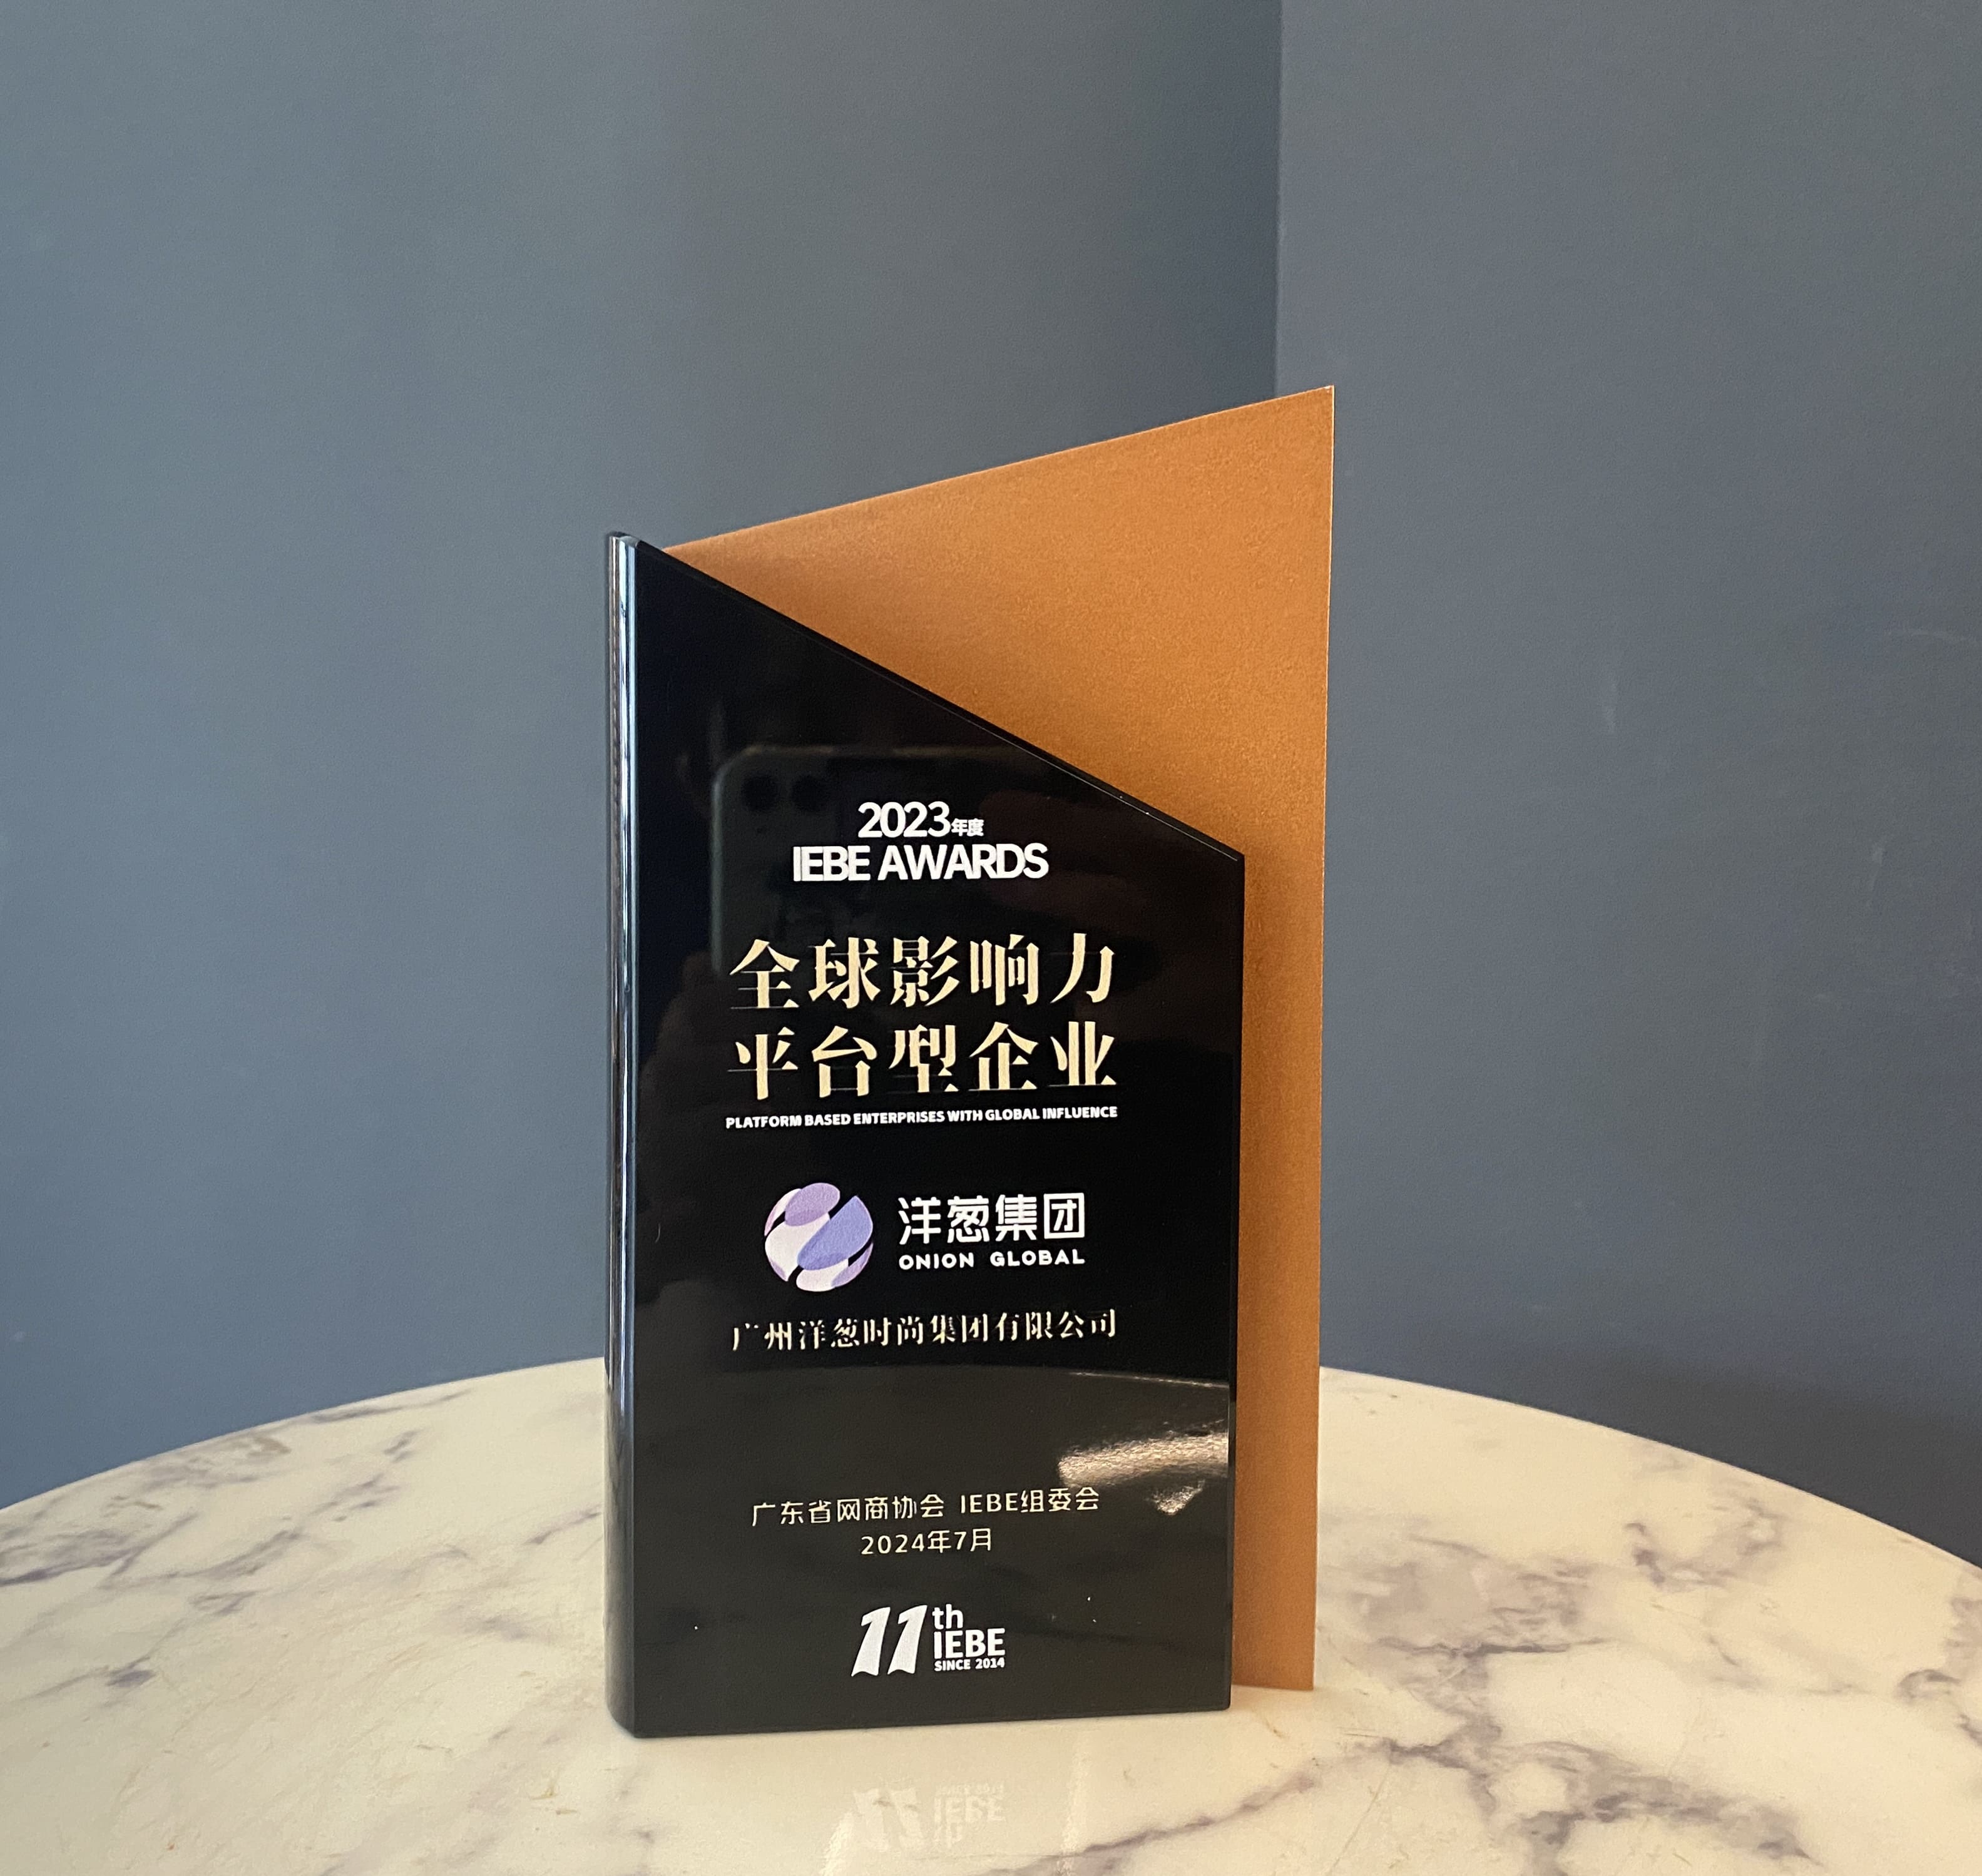 洋葱集团荣获全球影响力平台型企业、网商行业践行公益奖、放心消费公示单位三项大奖